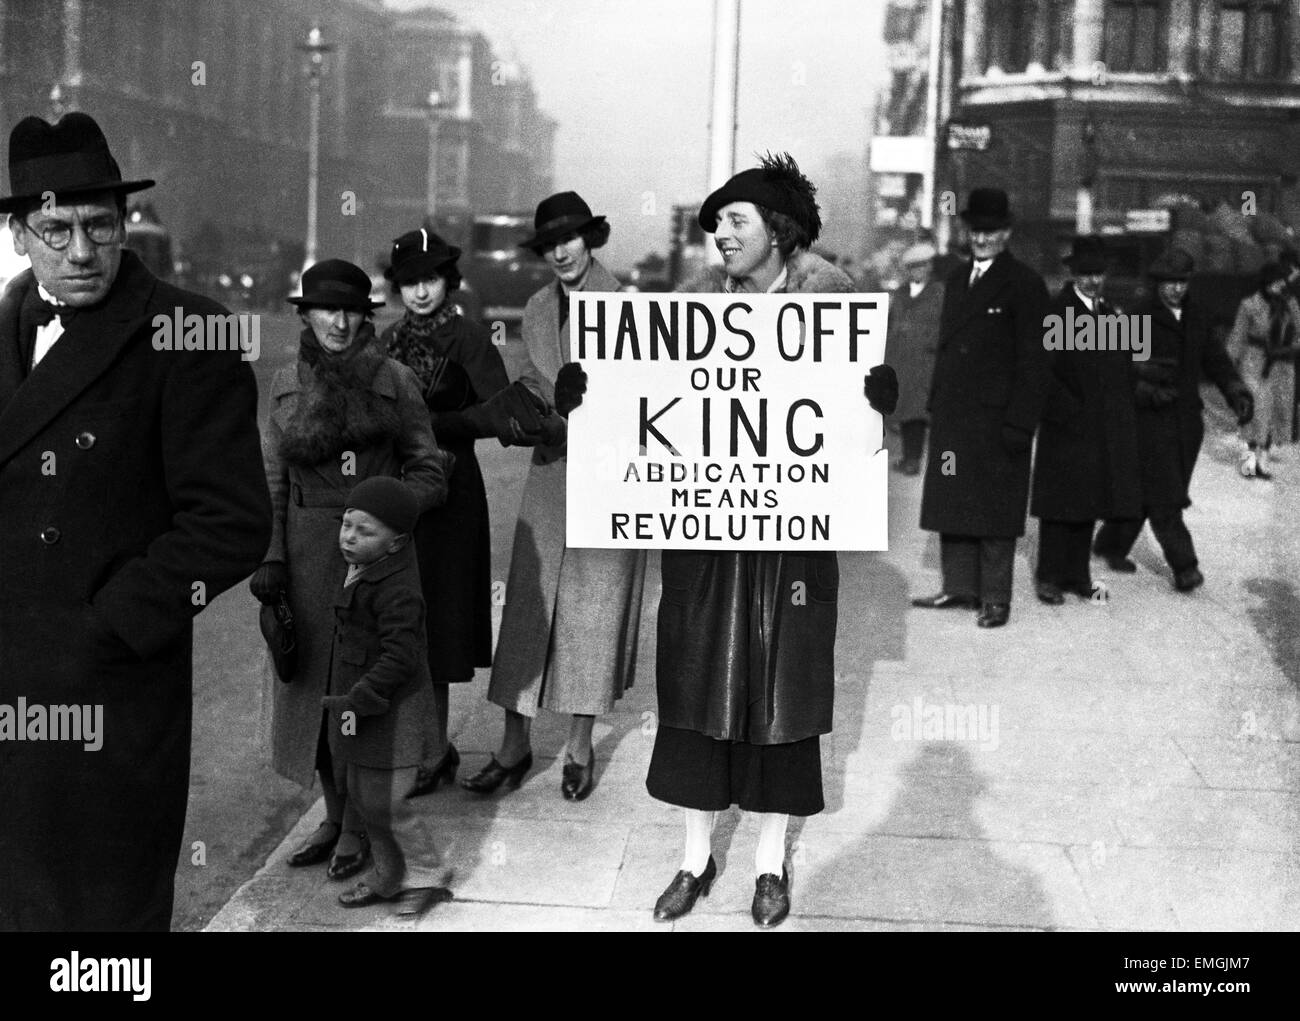 Le roi Édouard VIII Crise Abdication décembre 1936. Une femme tenant une bannière à l'extérieur du Parlement. Banner se lit comme suit : Hands Off notre roi. Abdication signifie la révolution. Banque D'Images